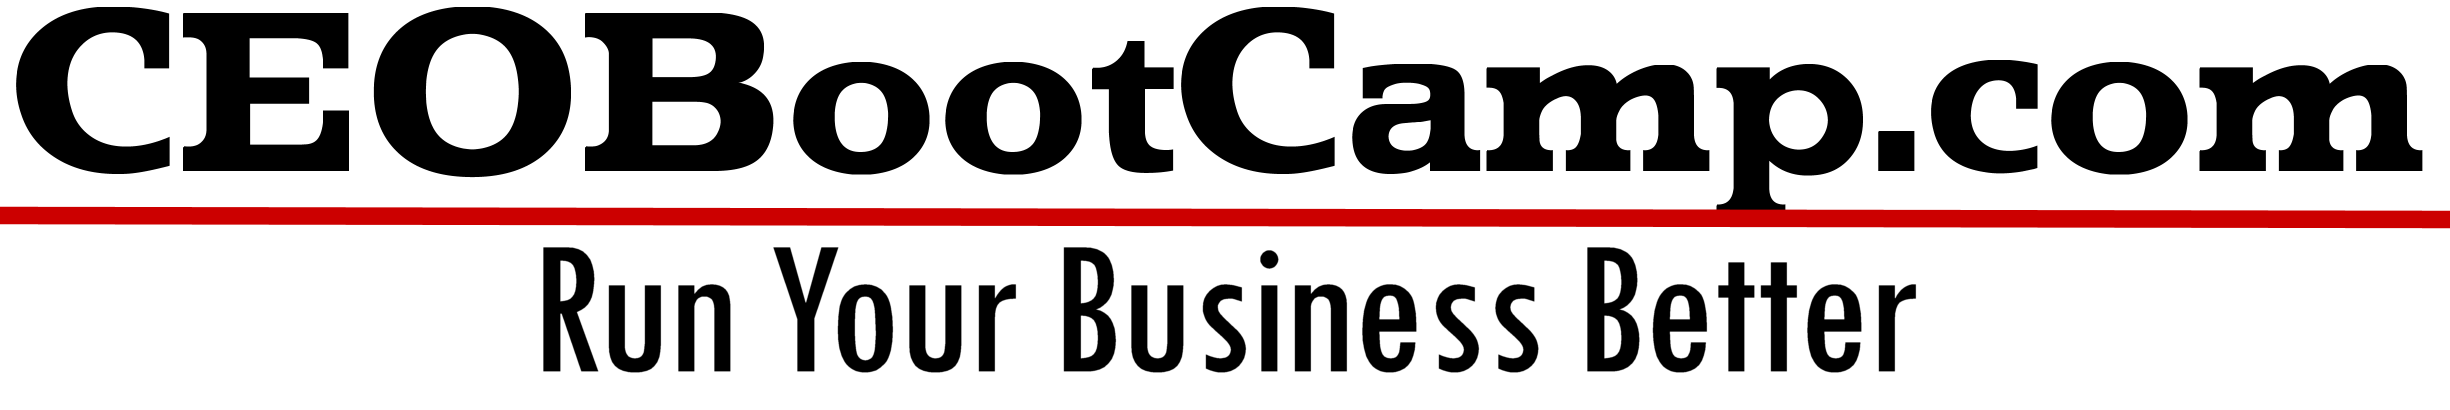 CEOBootCamp logo